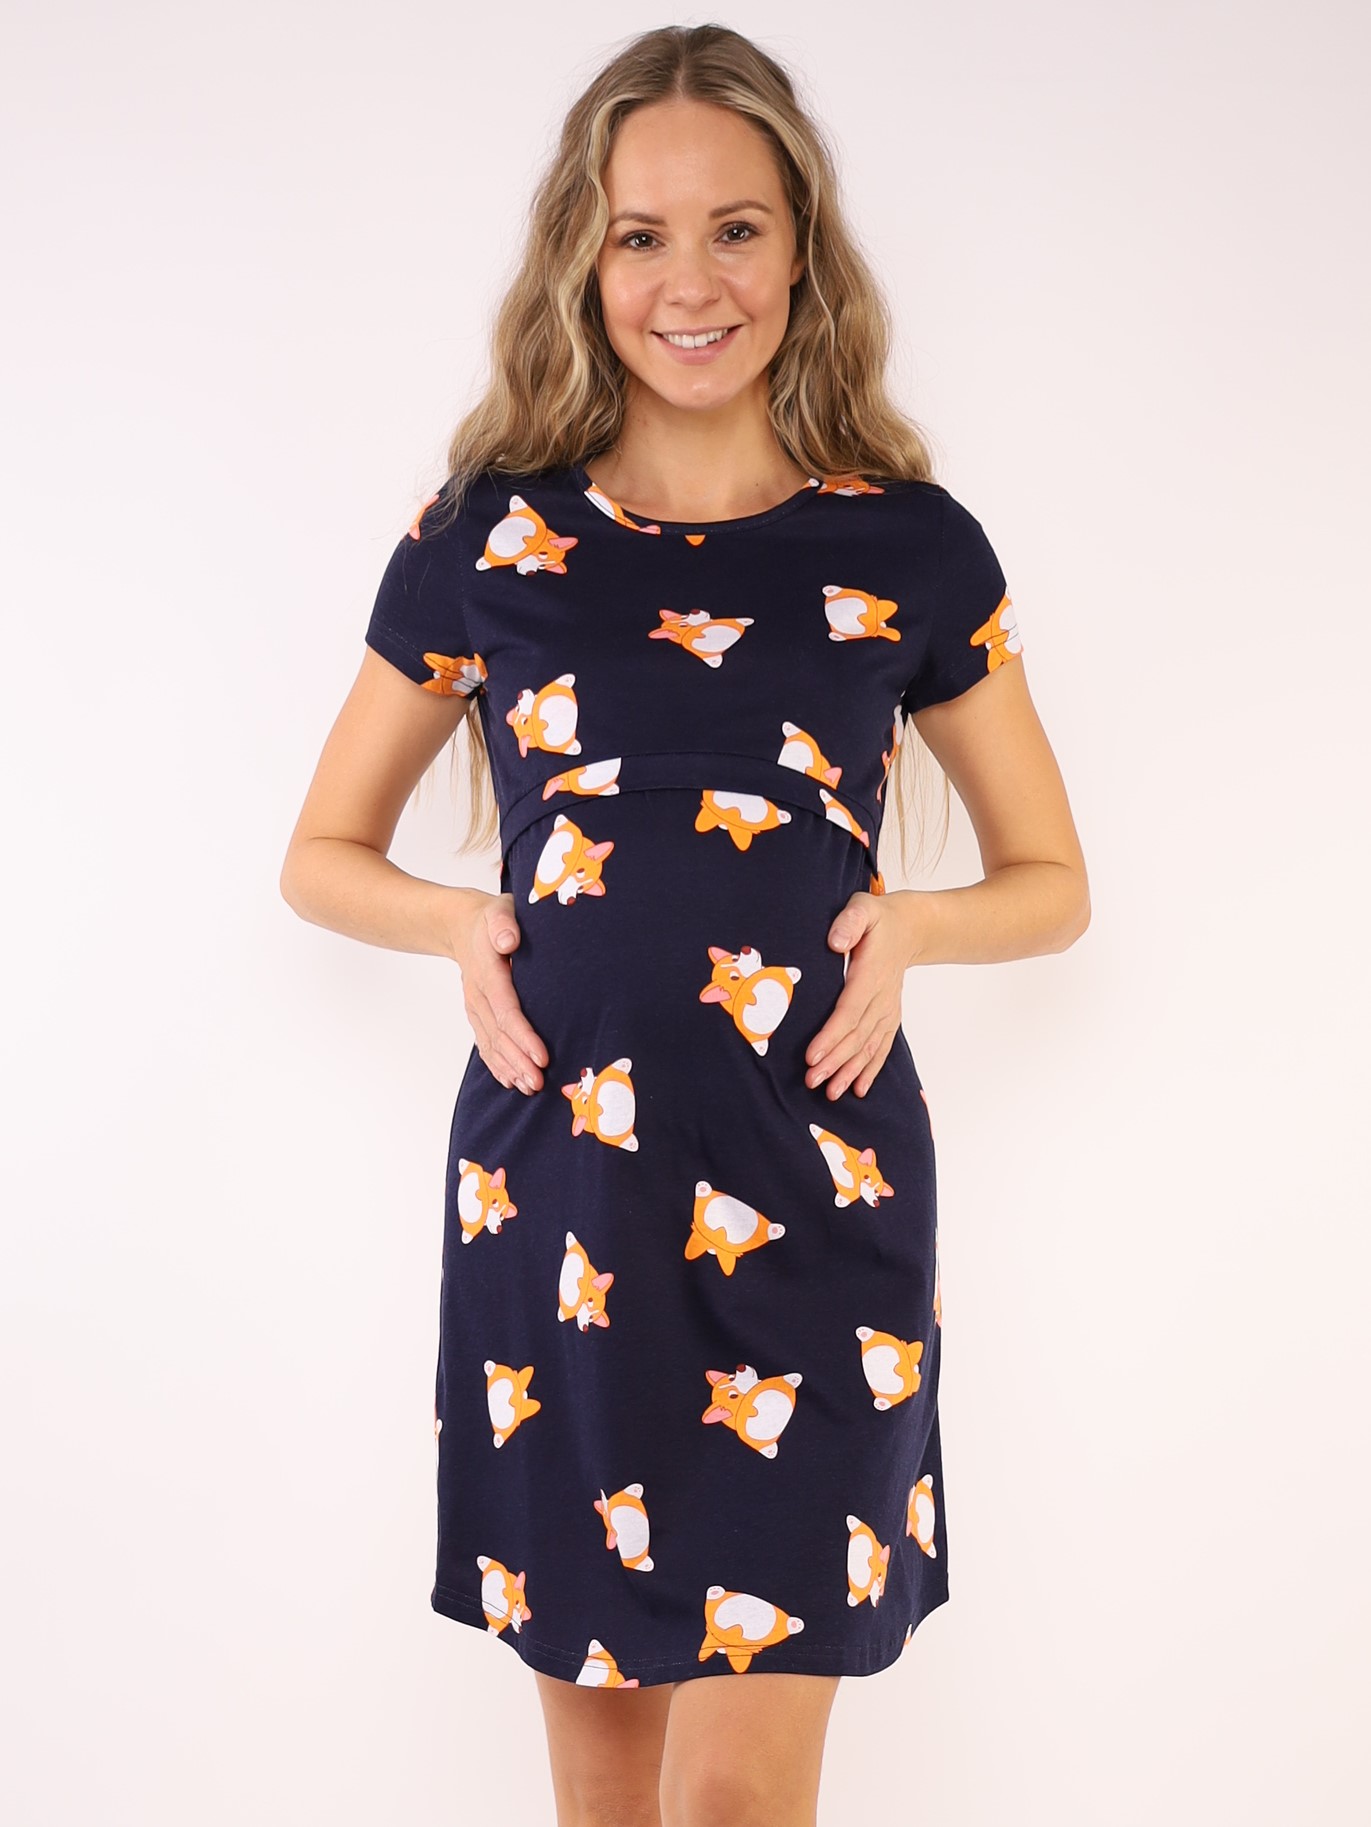 Сорочка для беременных и кормящих (домашнее платье) арт. 360360 синий/корги